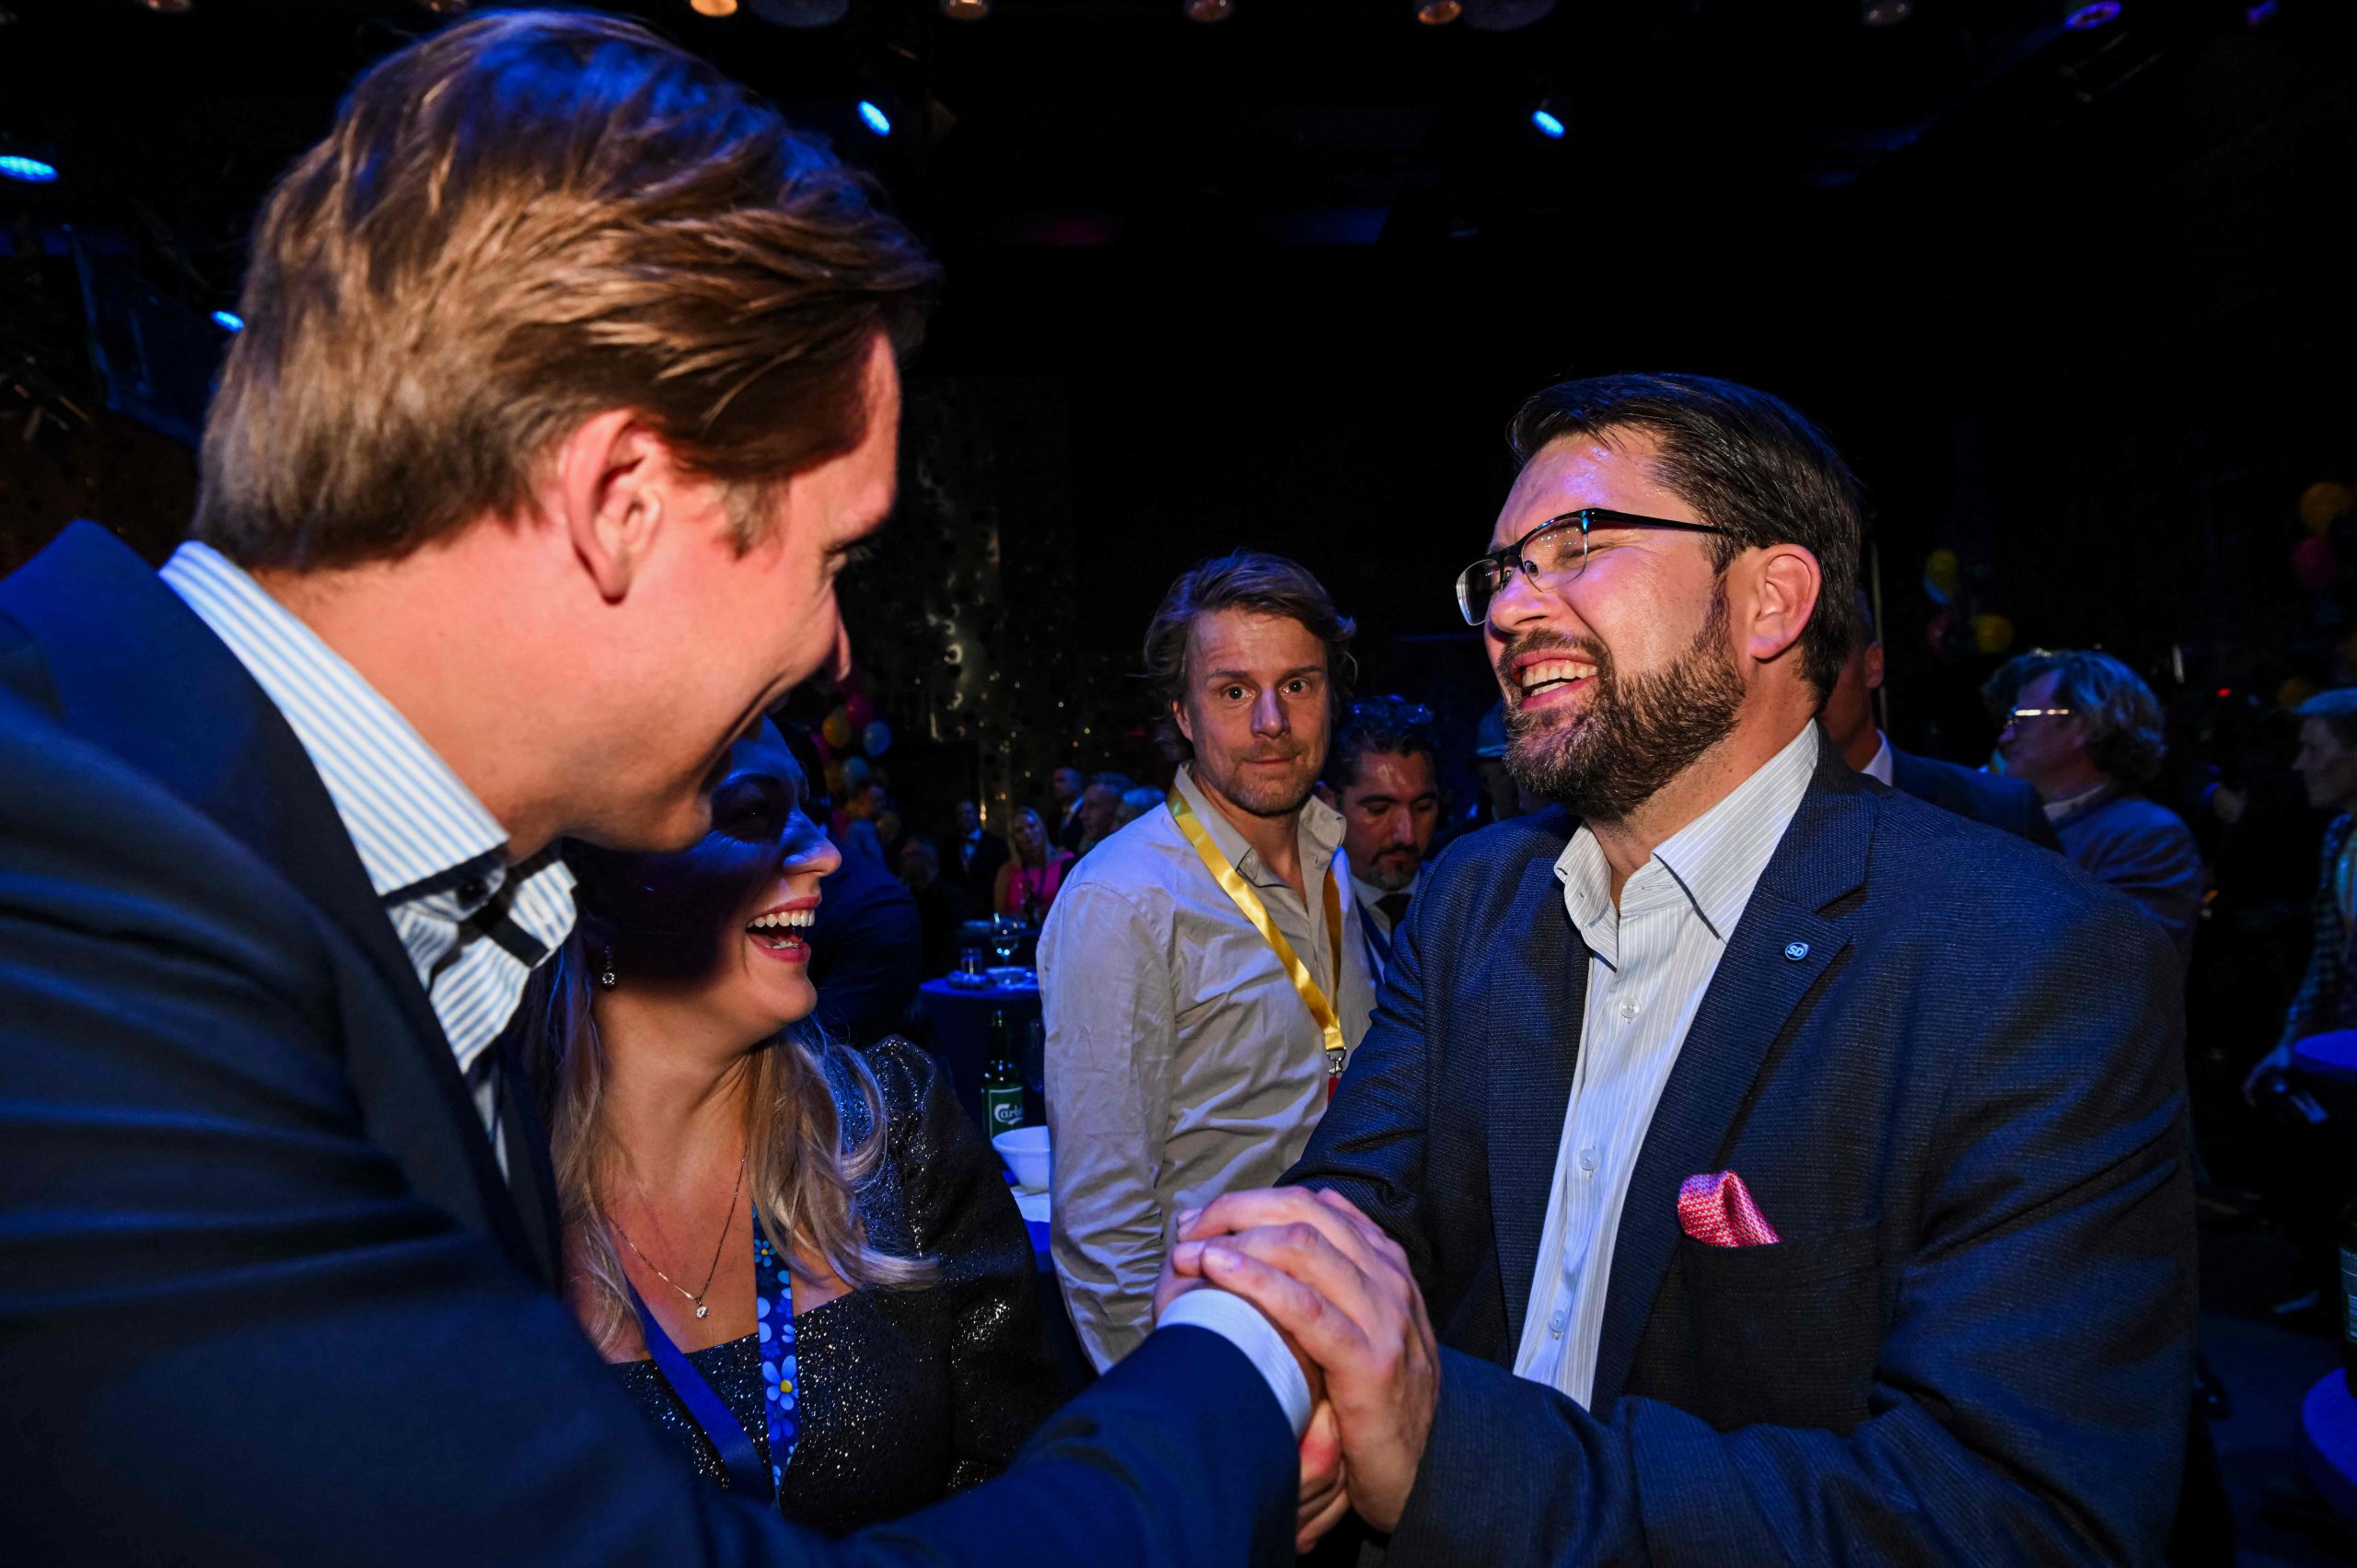  瑞典大选 极右翼“瑞典民主党”有望成第二大党